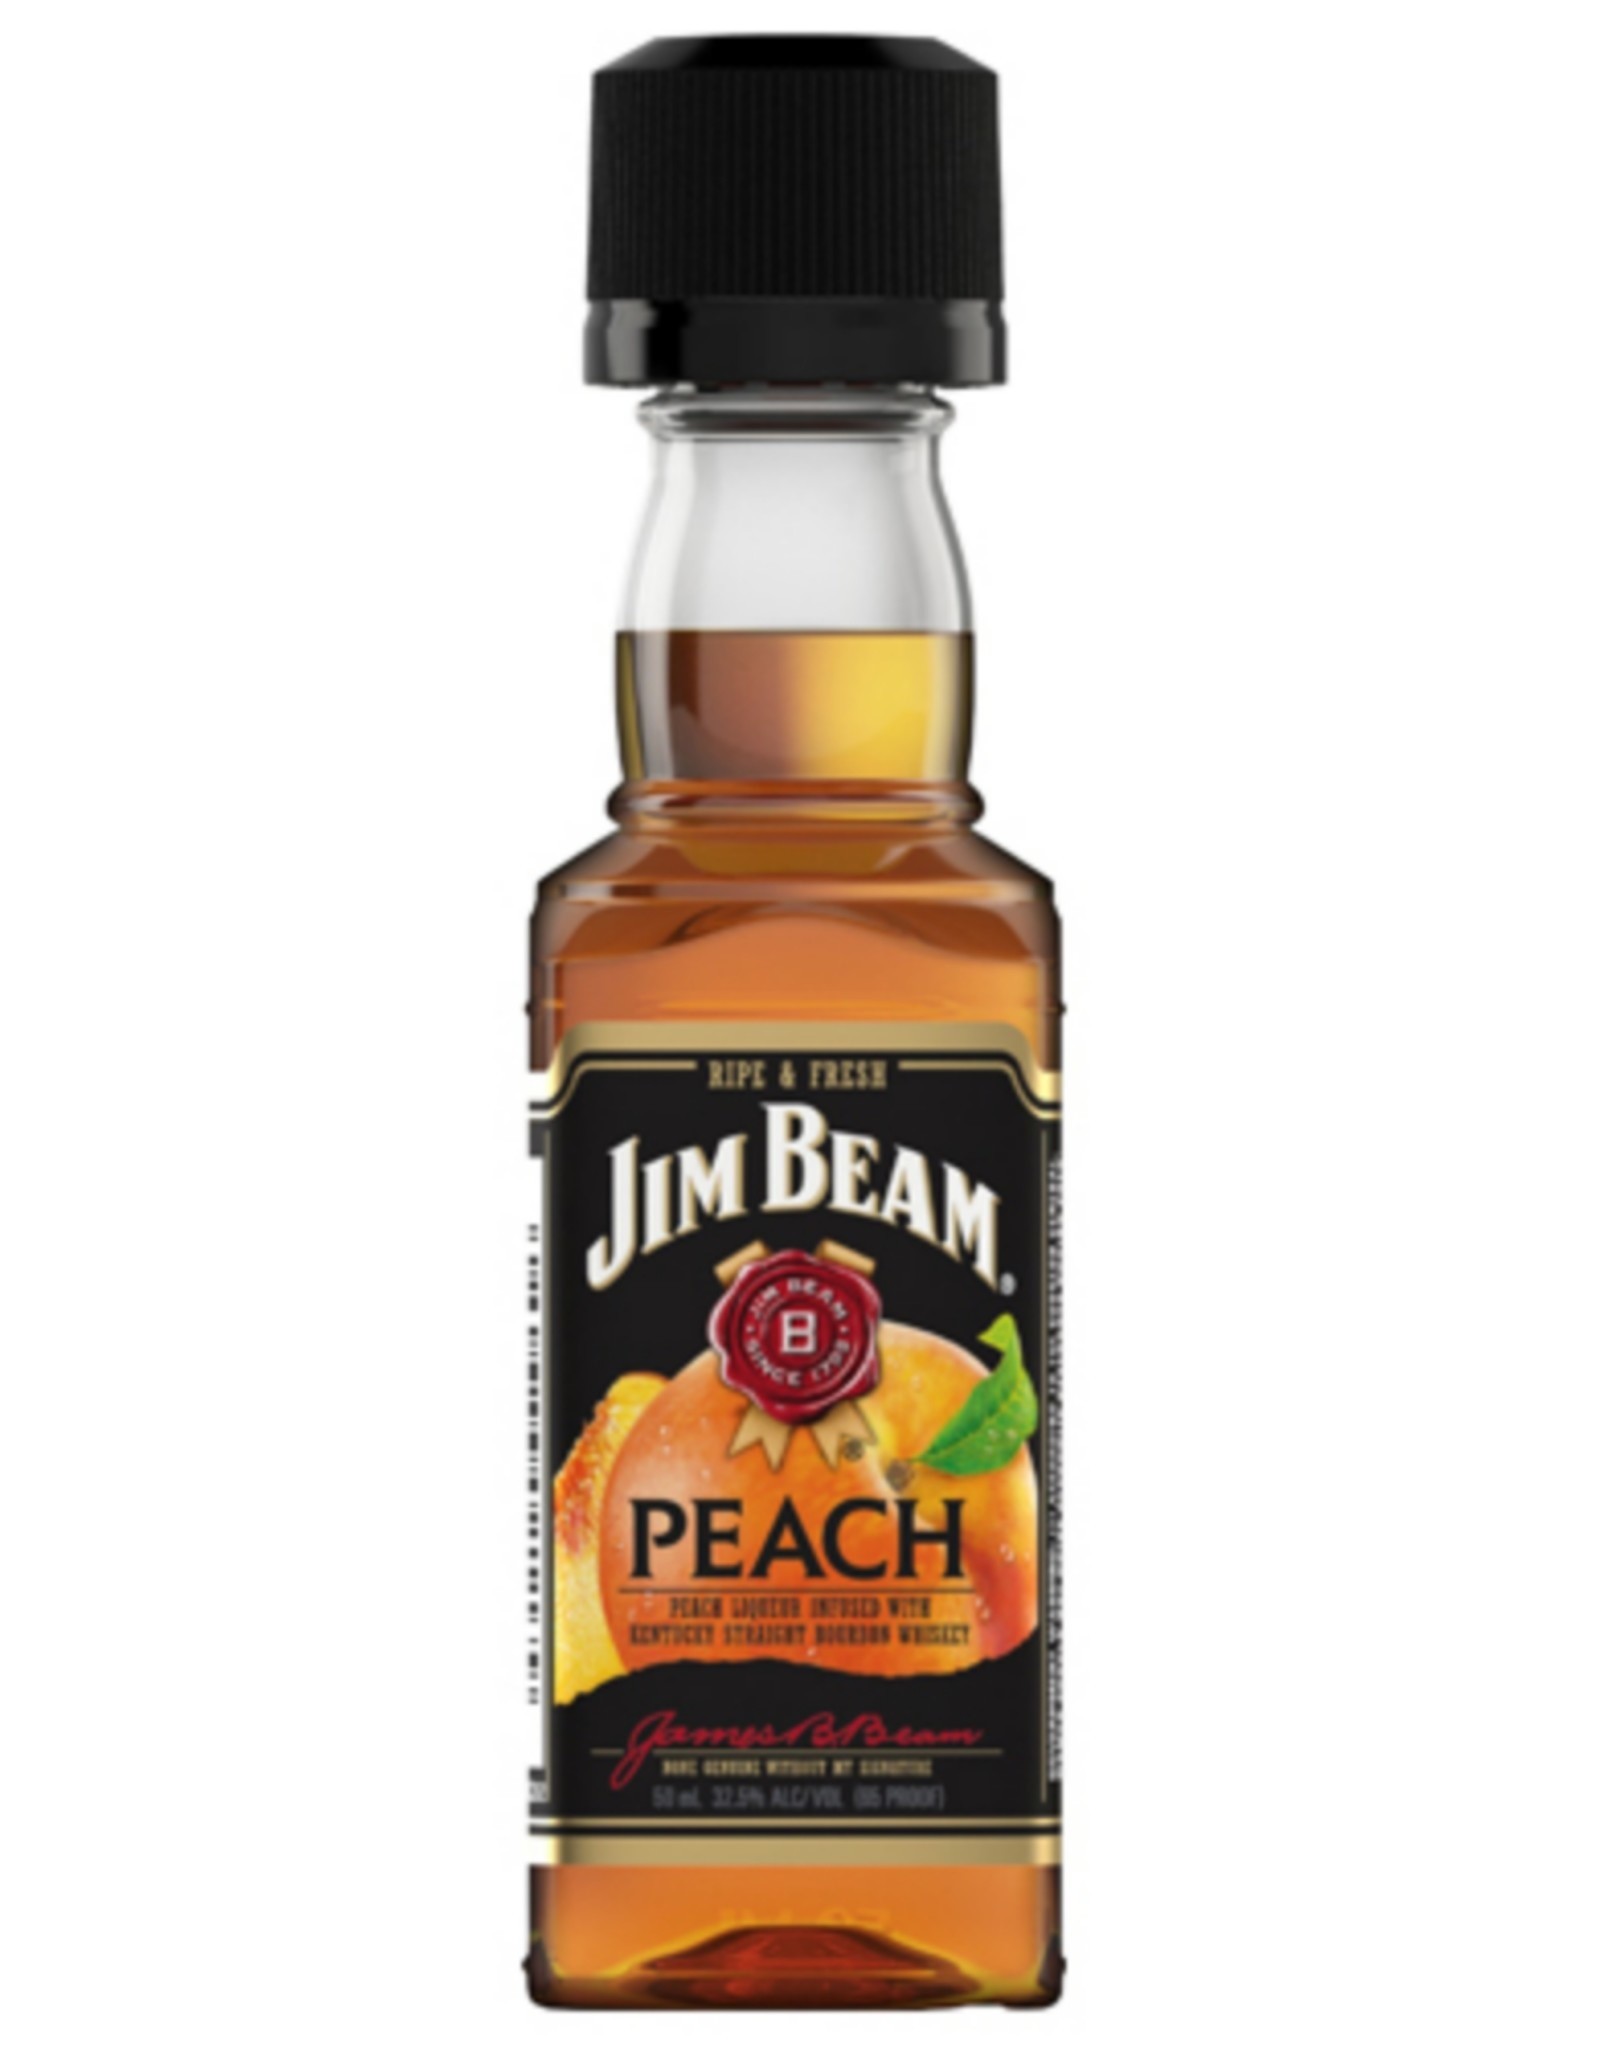 Jim Beam JIM BEAM - PEACH - WHISKEY - 65 PR - 50 ML